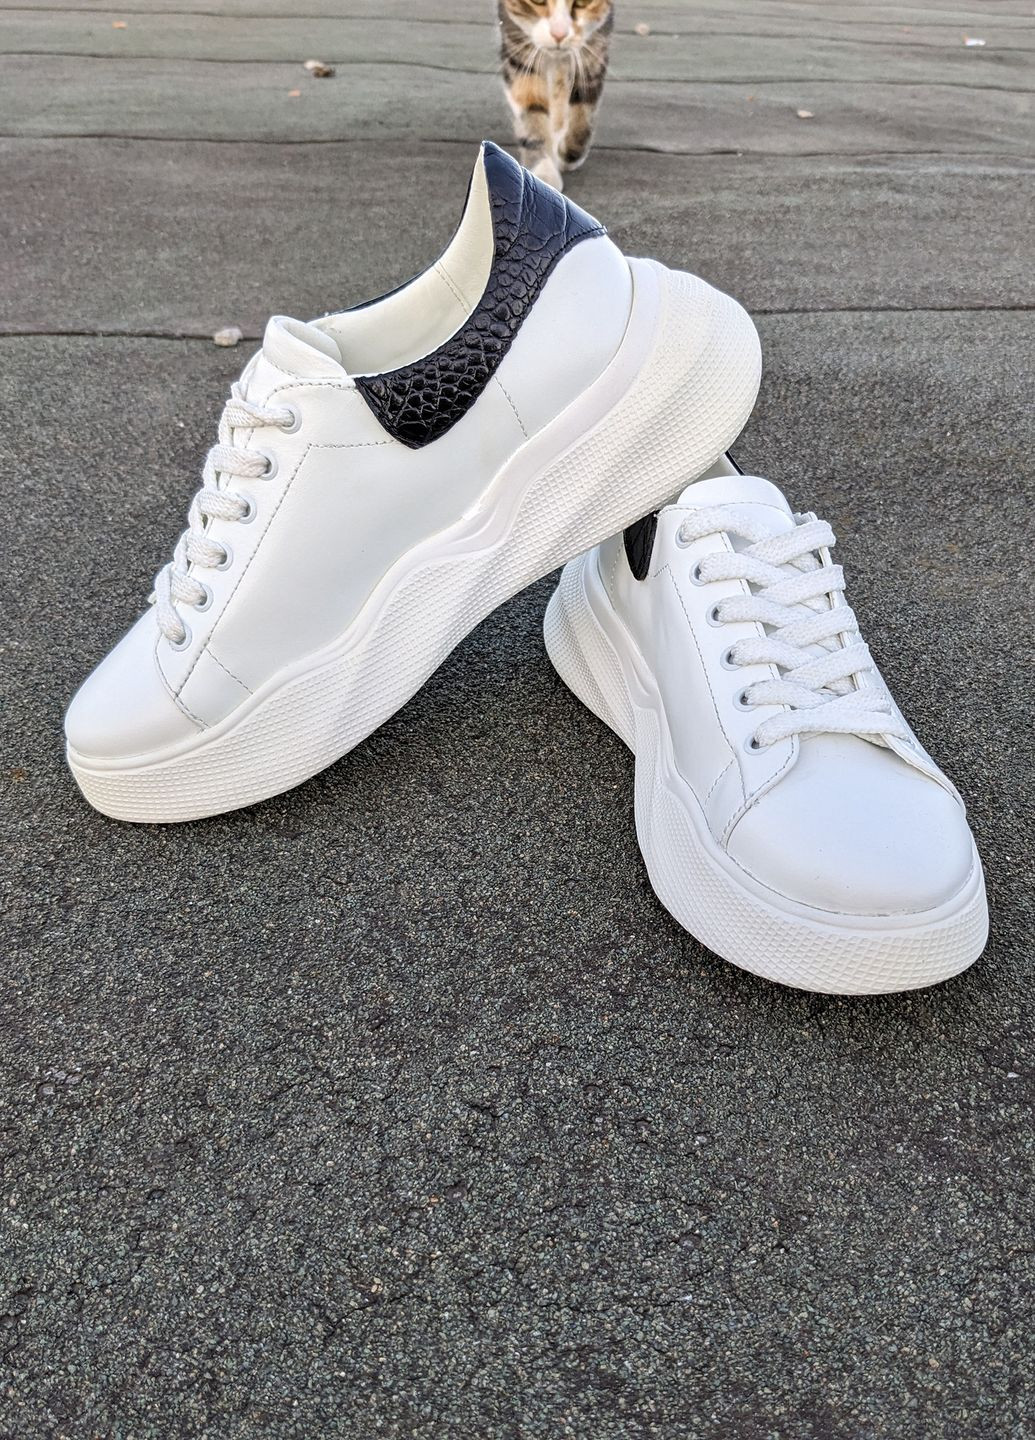 Білі осінні зручні, легкі та практичні білі шкіряні кросівки INNOE Кроссовки